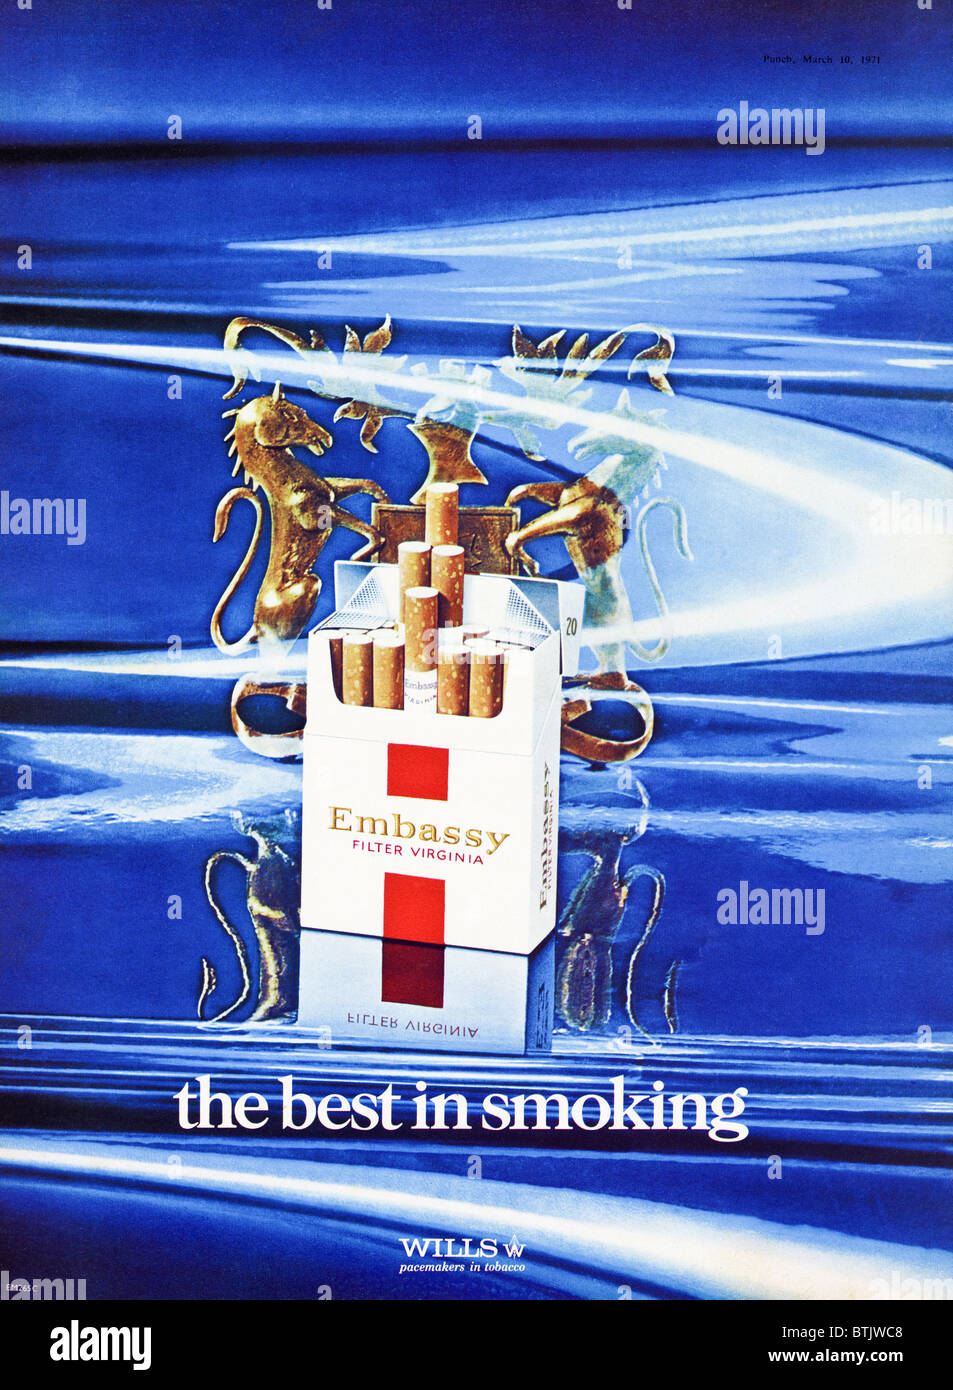 Werbung für Wills Embassy Zigaretten in Zeitschrift um 1971 Stockfoto